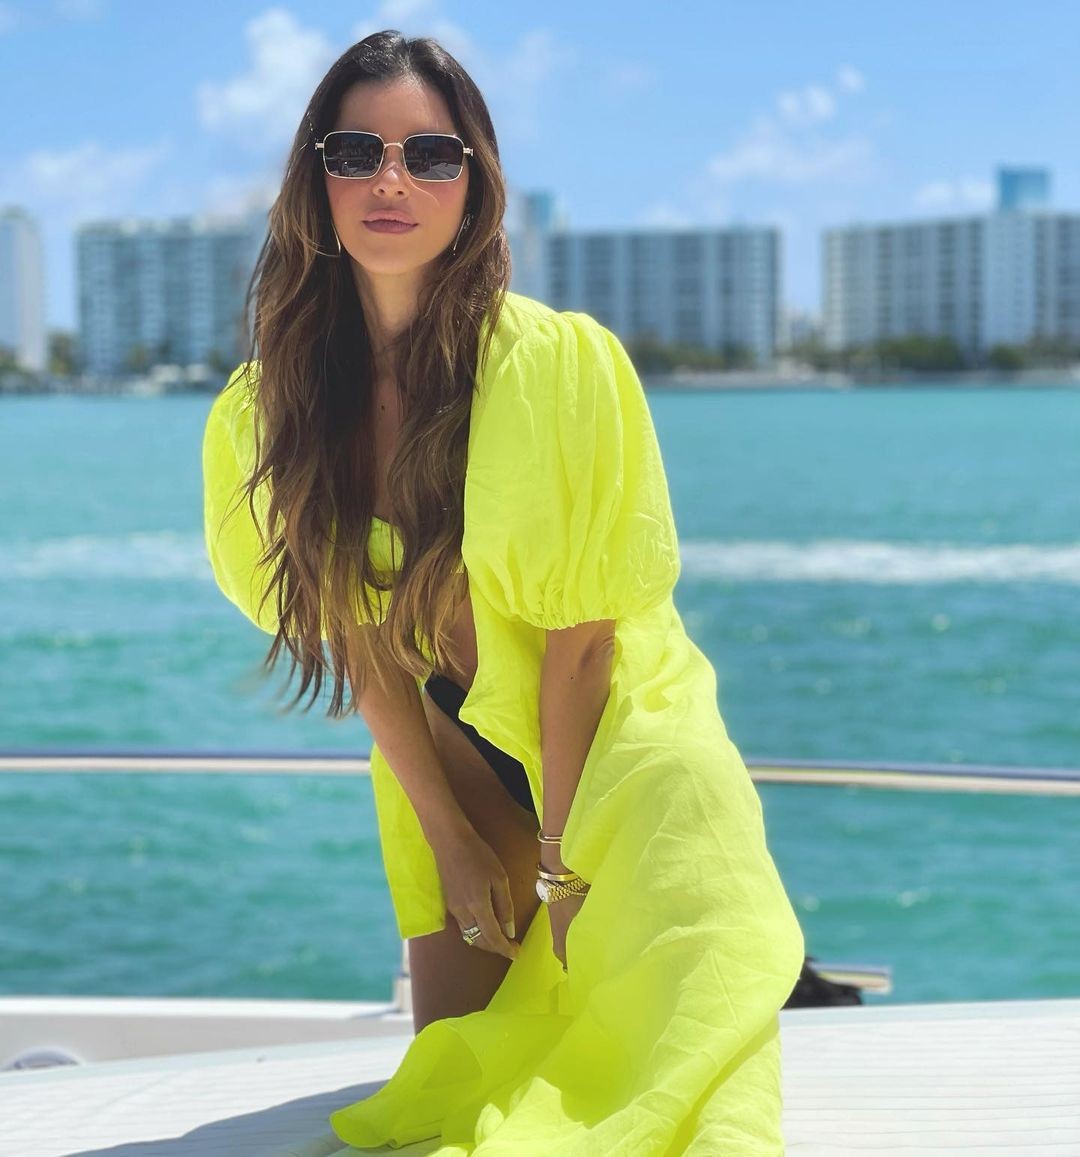 Mariana Rios aproveitou sábado de sol em Miami (Foto: Reprodução/Instagram)